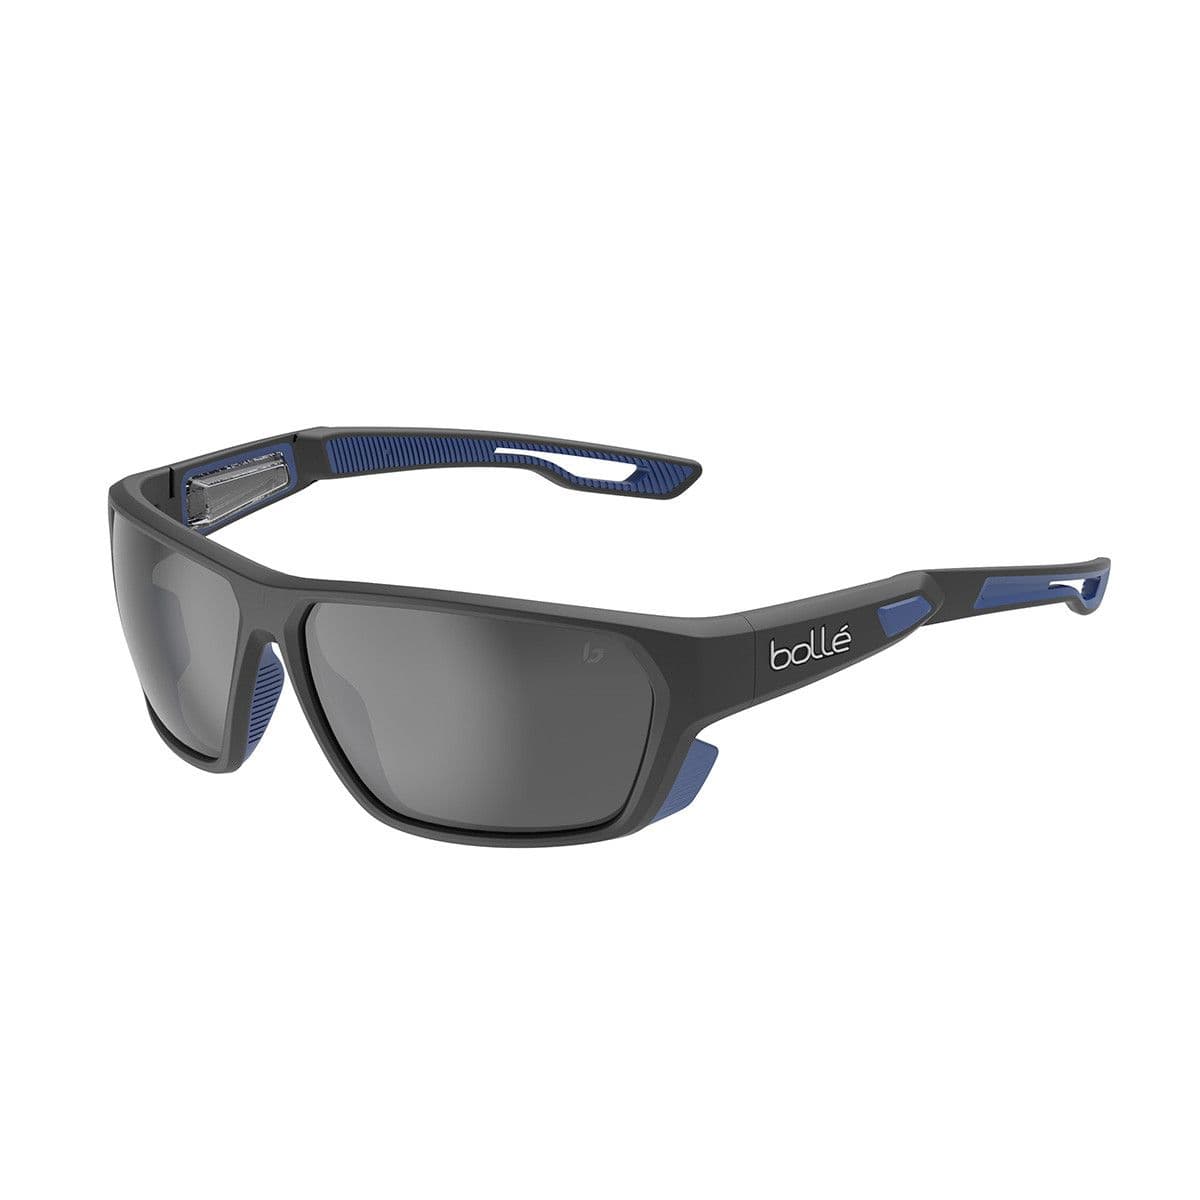 Bolle Airfin Sunglasses (sale)